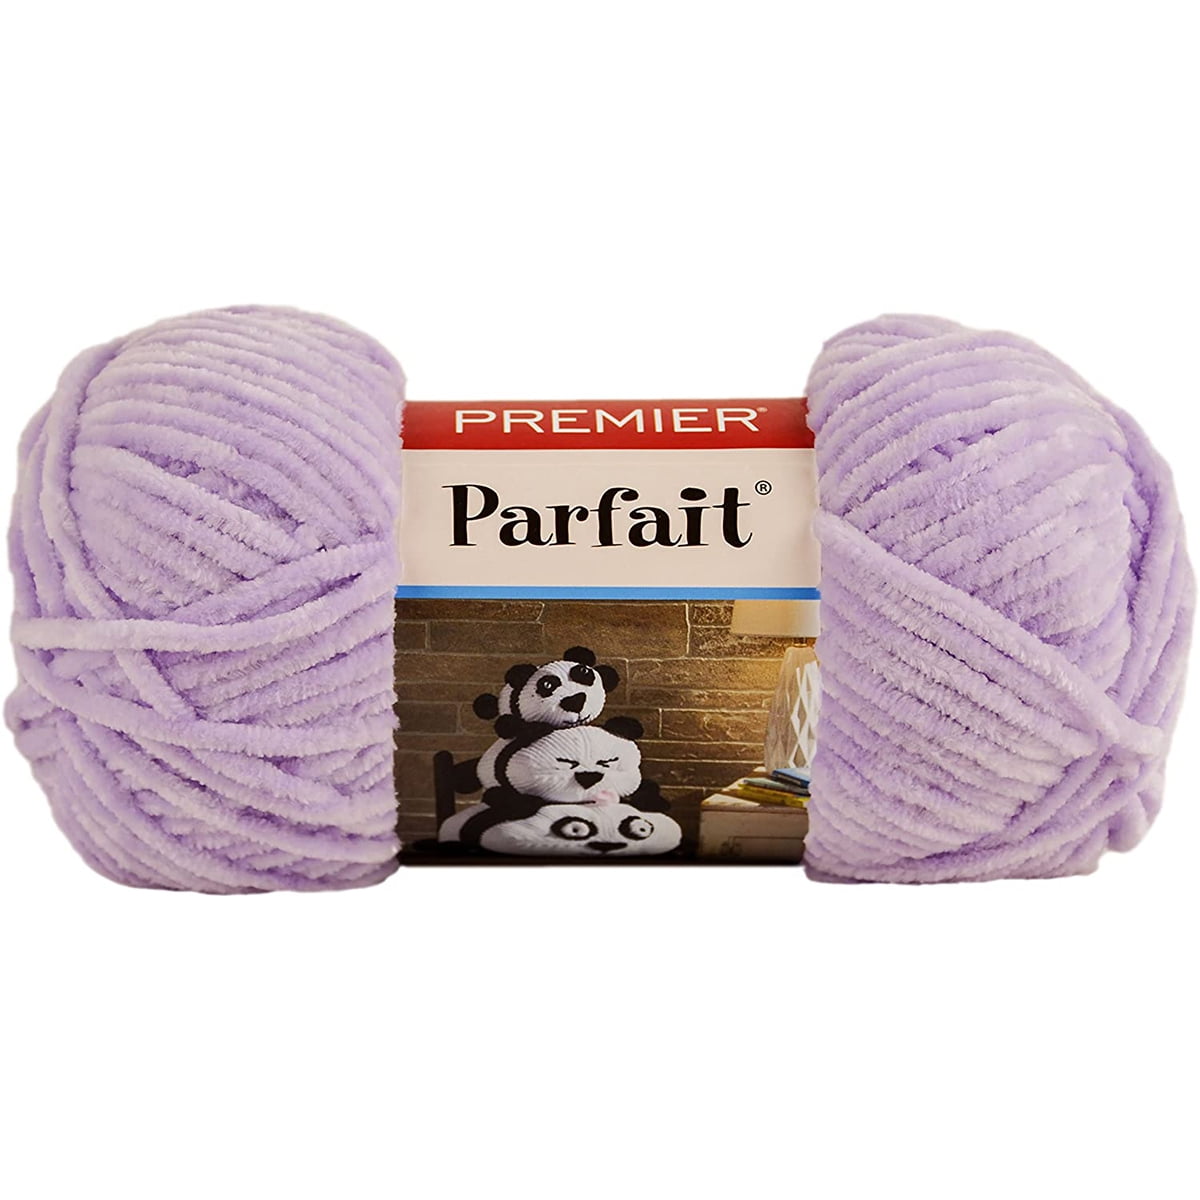 Premier Parfait and Parfait Flavors Yarn 